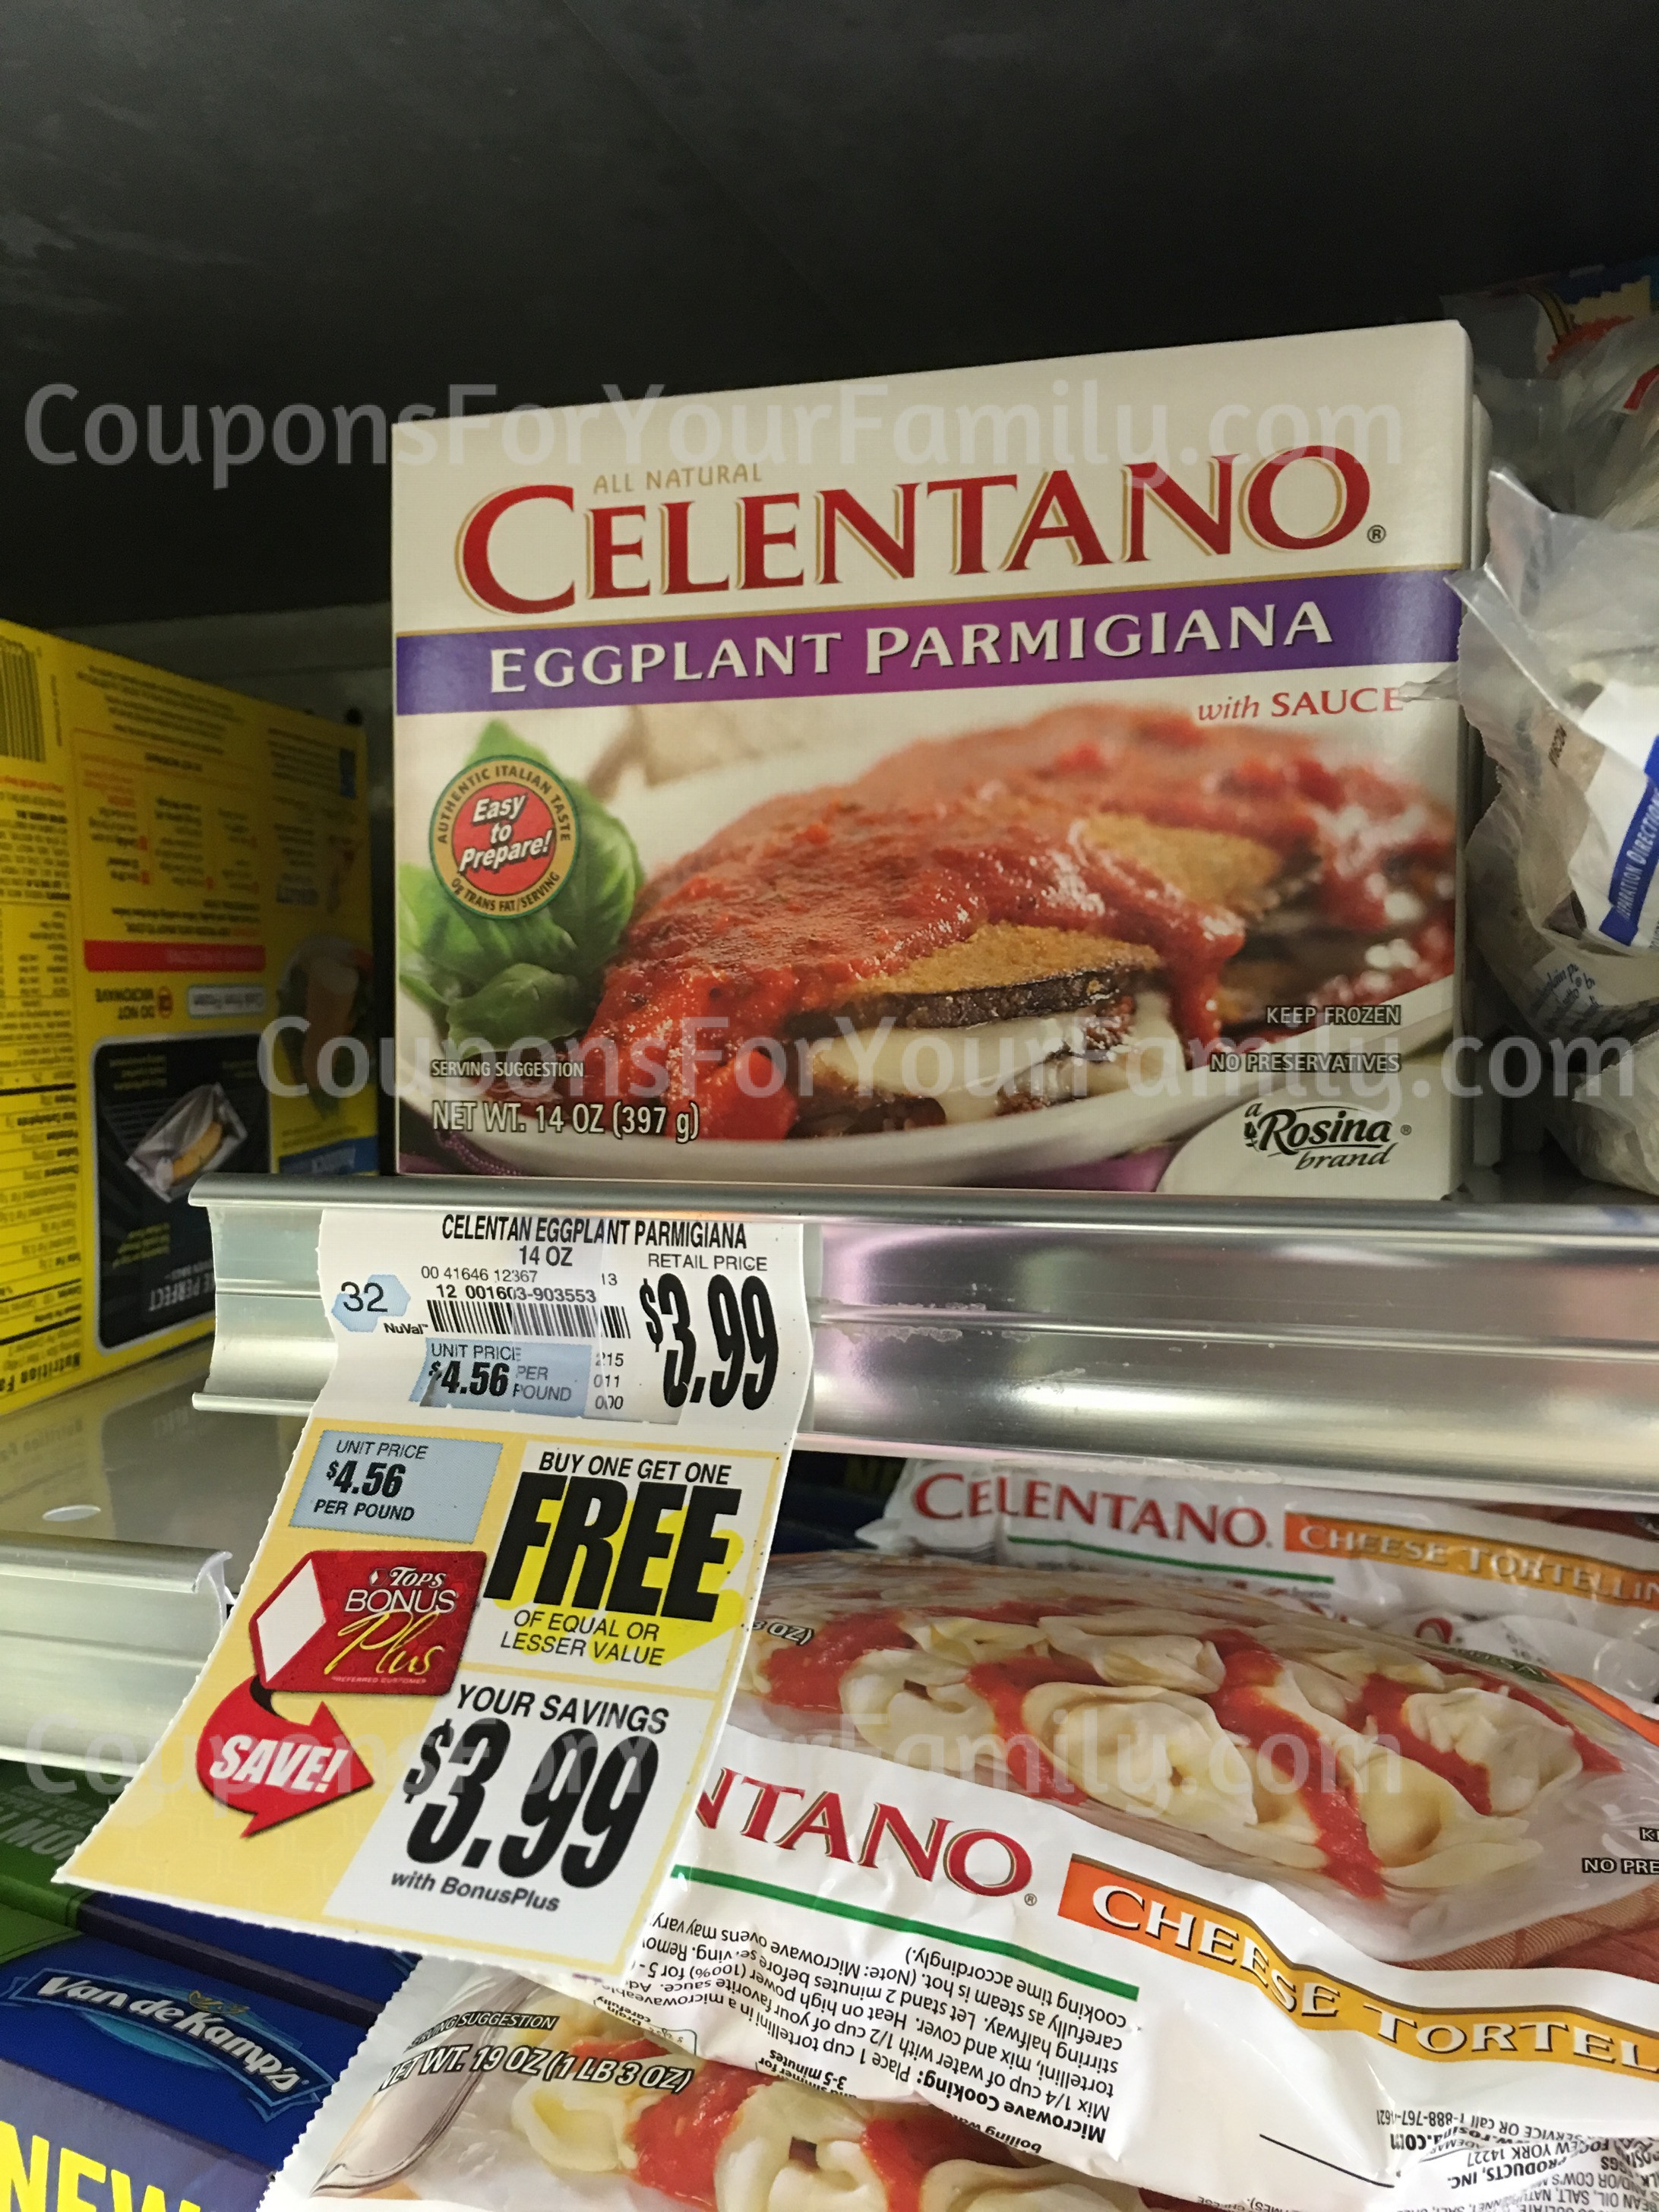 tops markets celentano pasta coupon deal